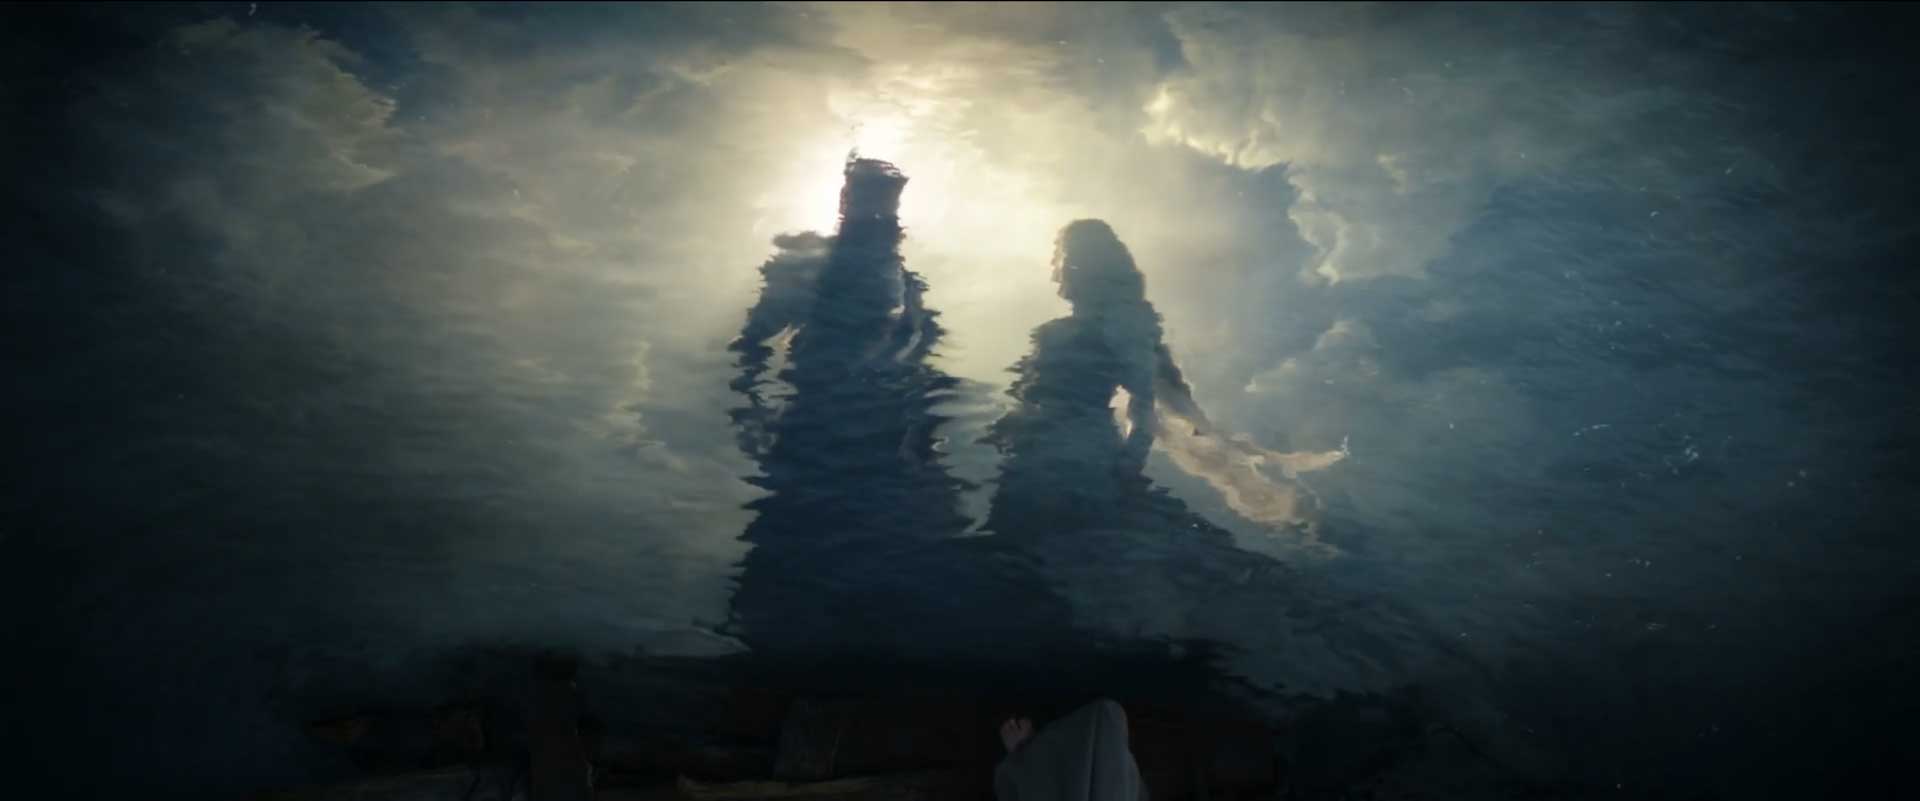 ارباب تاریکی در کنار گالادریل در تصور به نمایش درآمد توسط سائورون